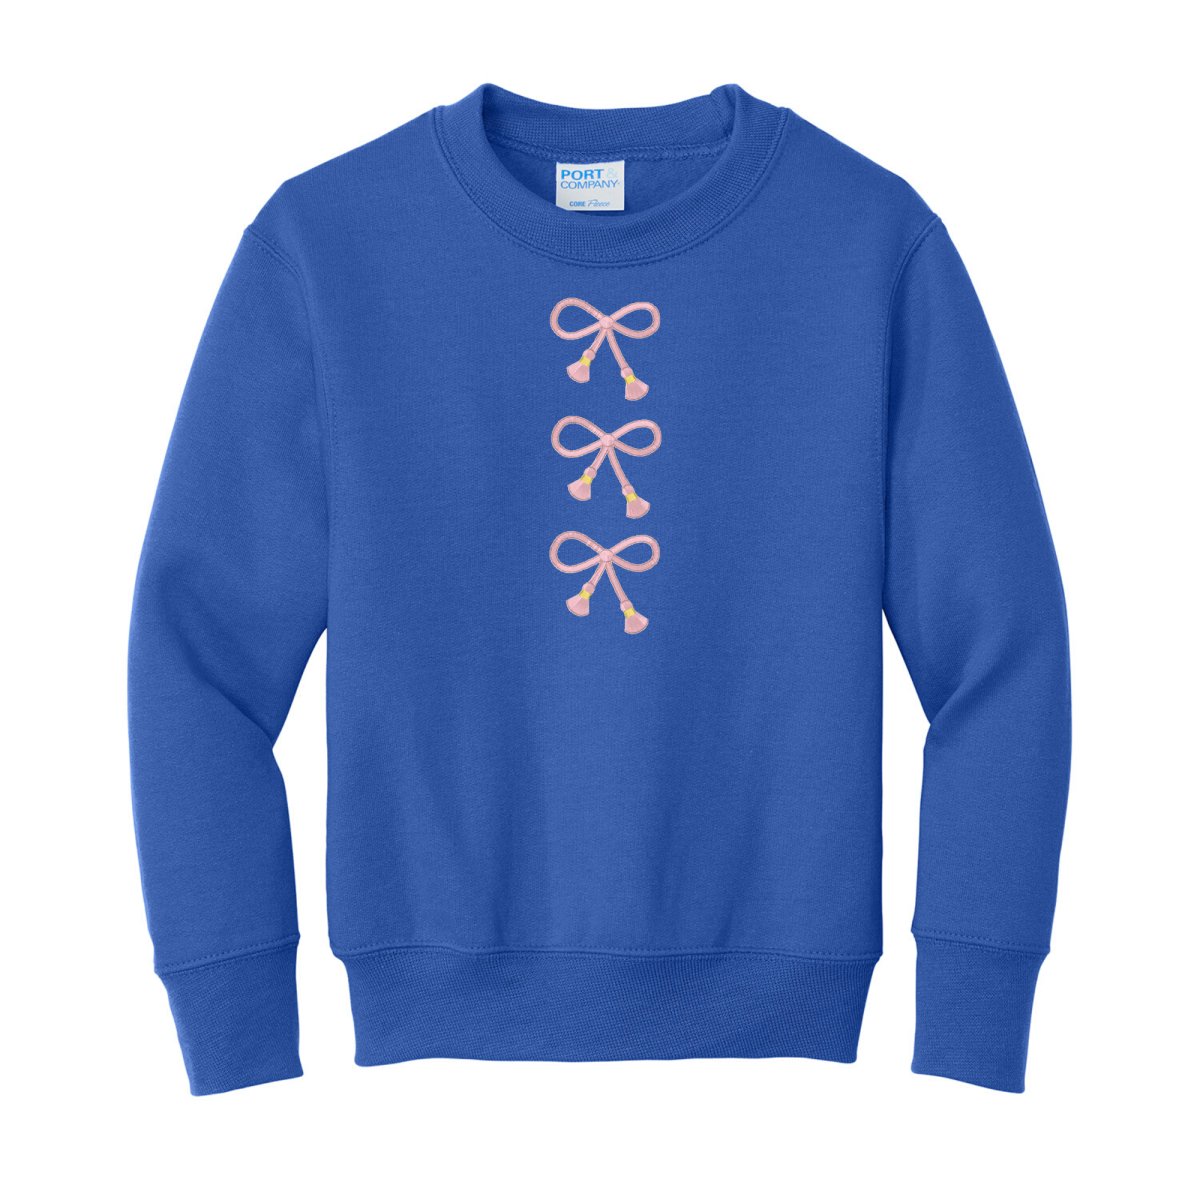 Kids Embroidered Tasseled 'Bows' Sweatshirt - United Monograms